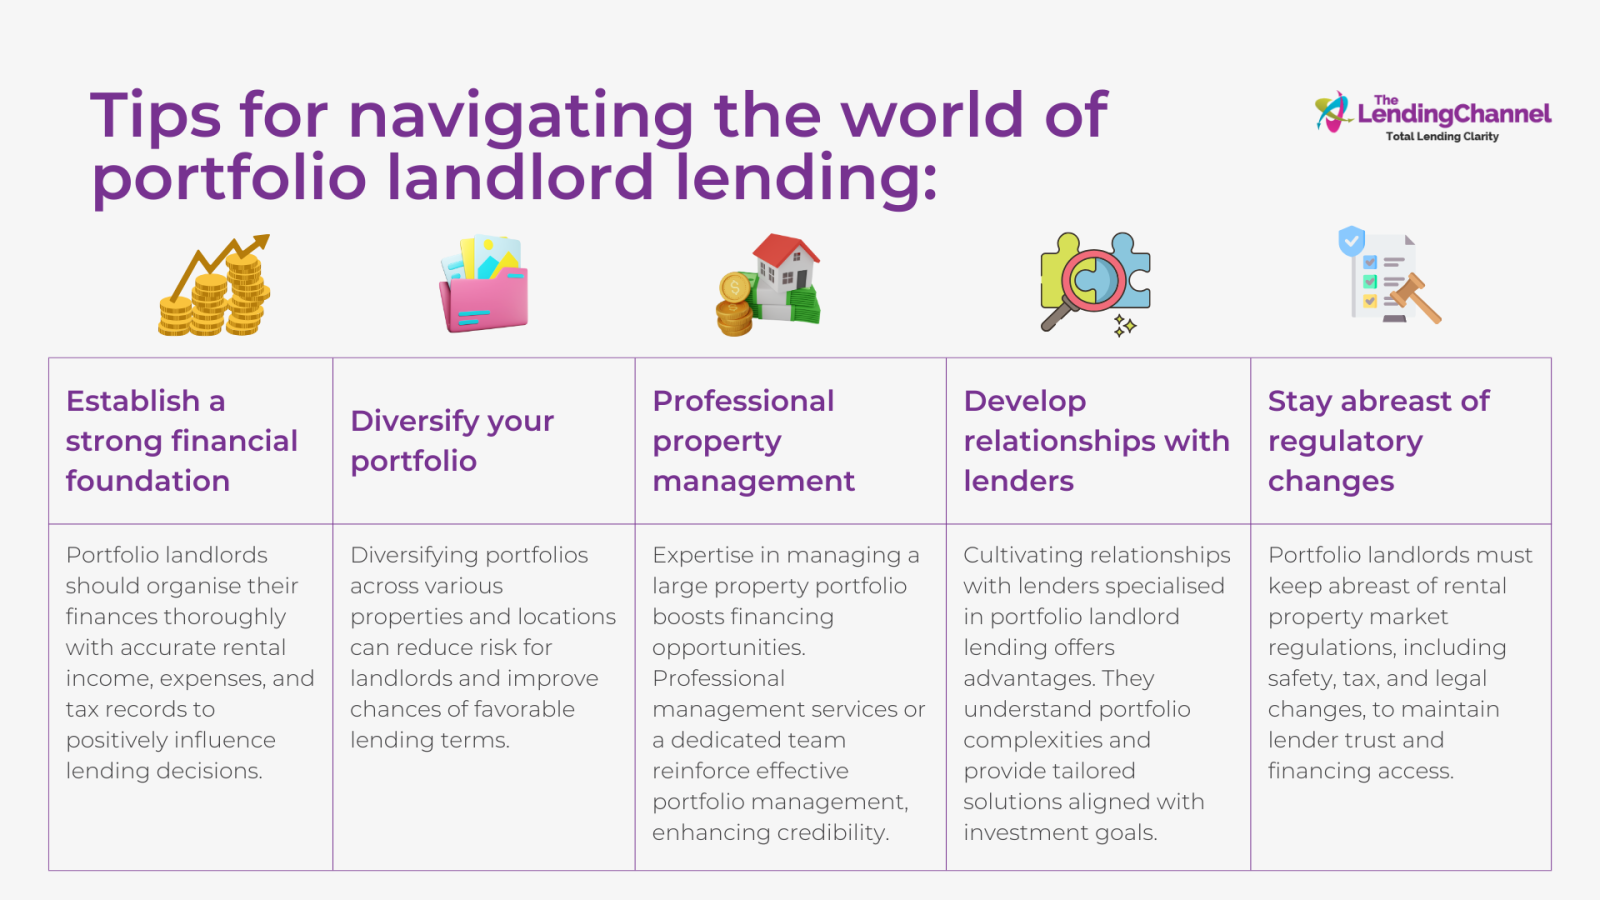 Tips for Navigating the World of Portfolio Landlord Lending